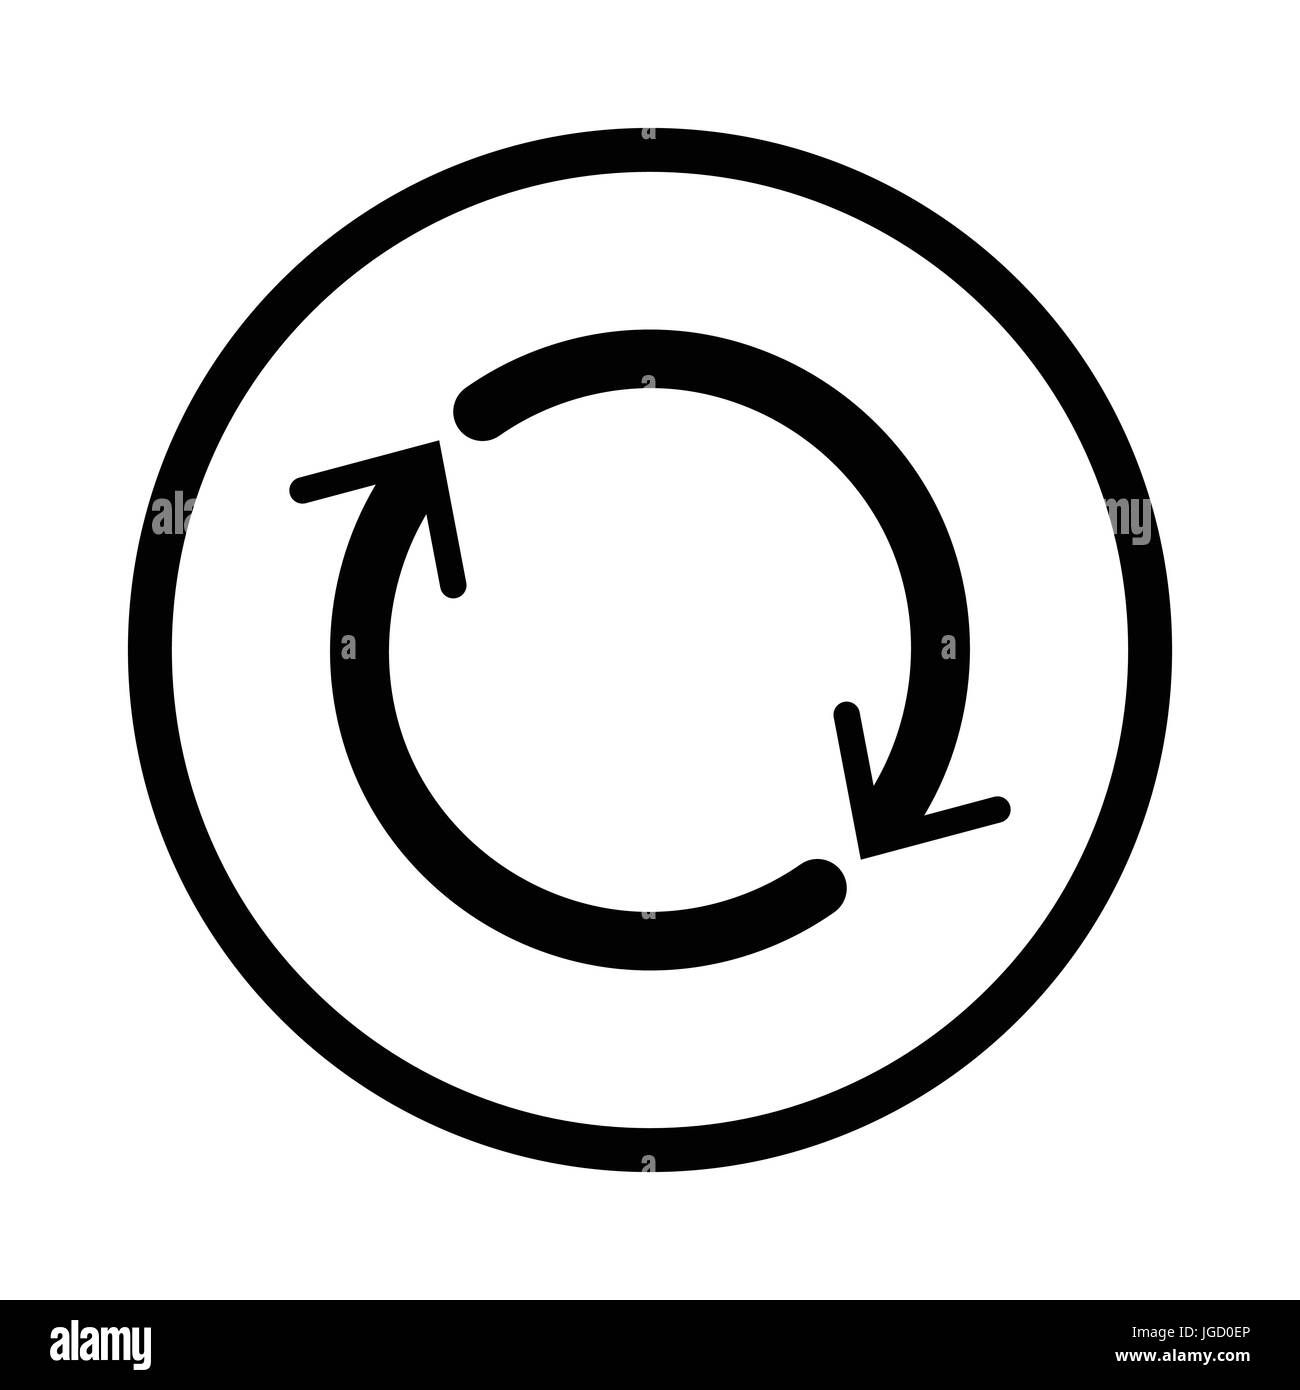 L'icône de réinitialisation, symbole iconique dans un cercle, sur fond blanc. Vector design iconique. Illustration de Vecteur